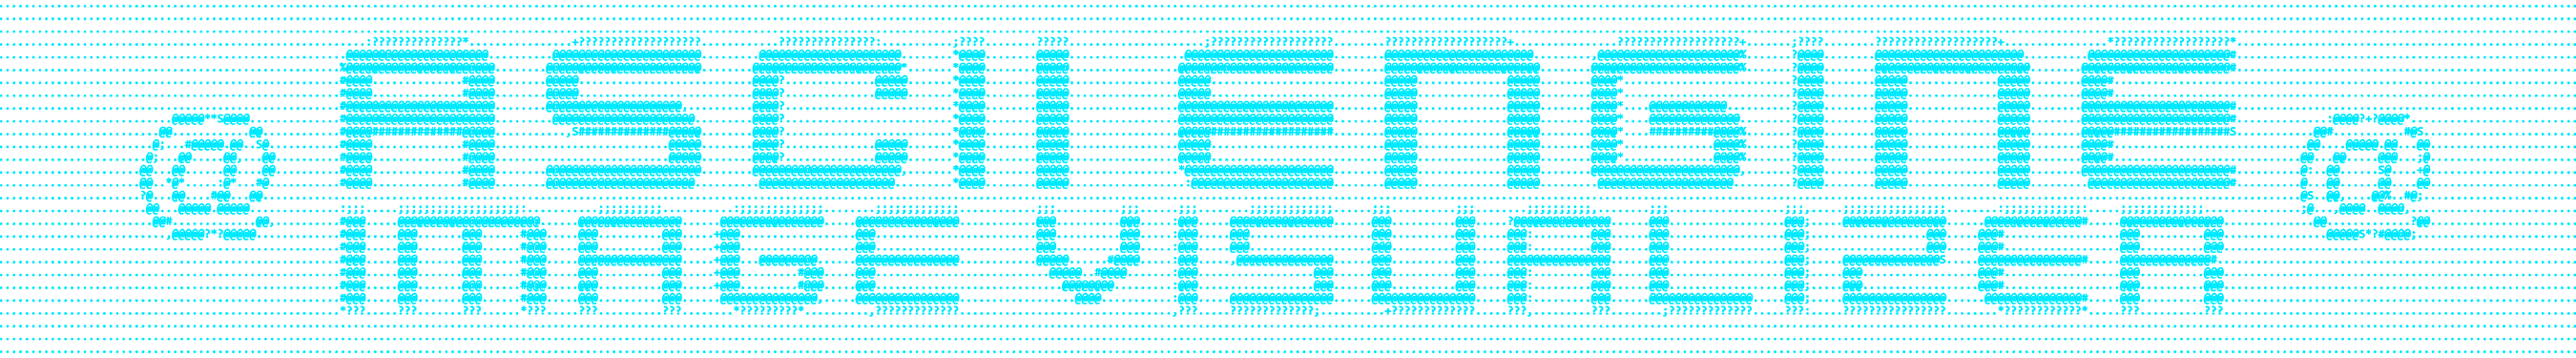 ASCII Engine: Image Visualizer